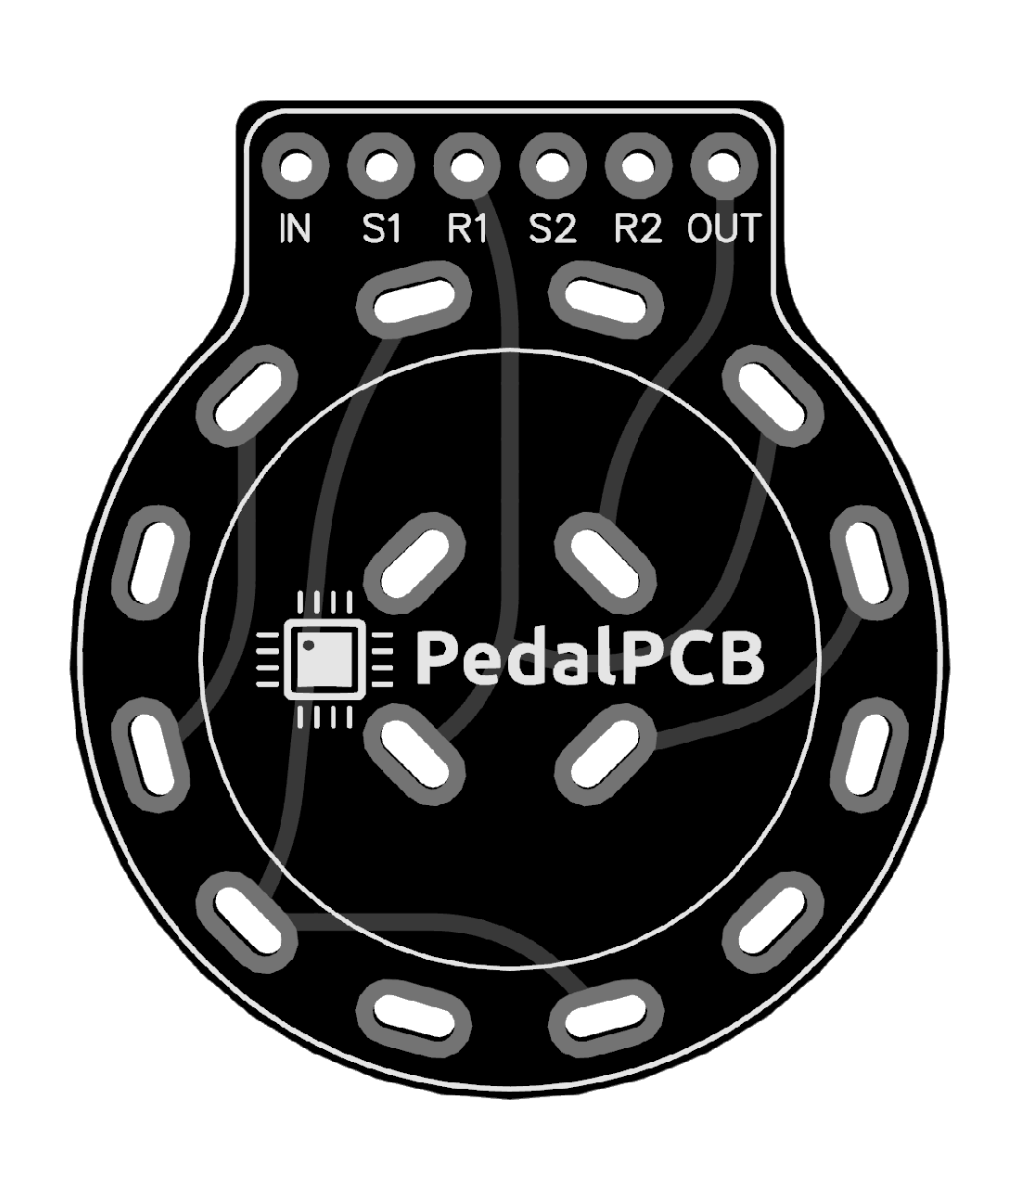 www.pedalpcb.com